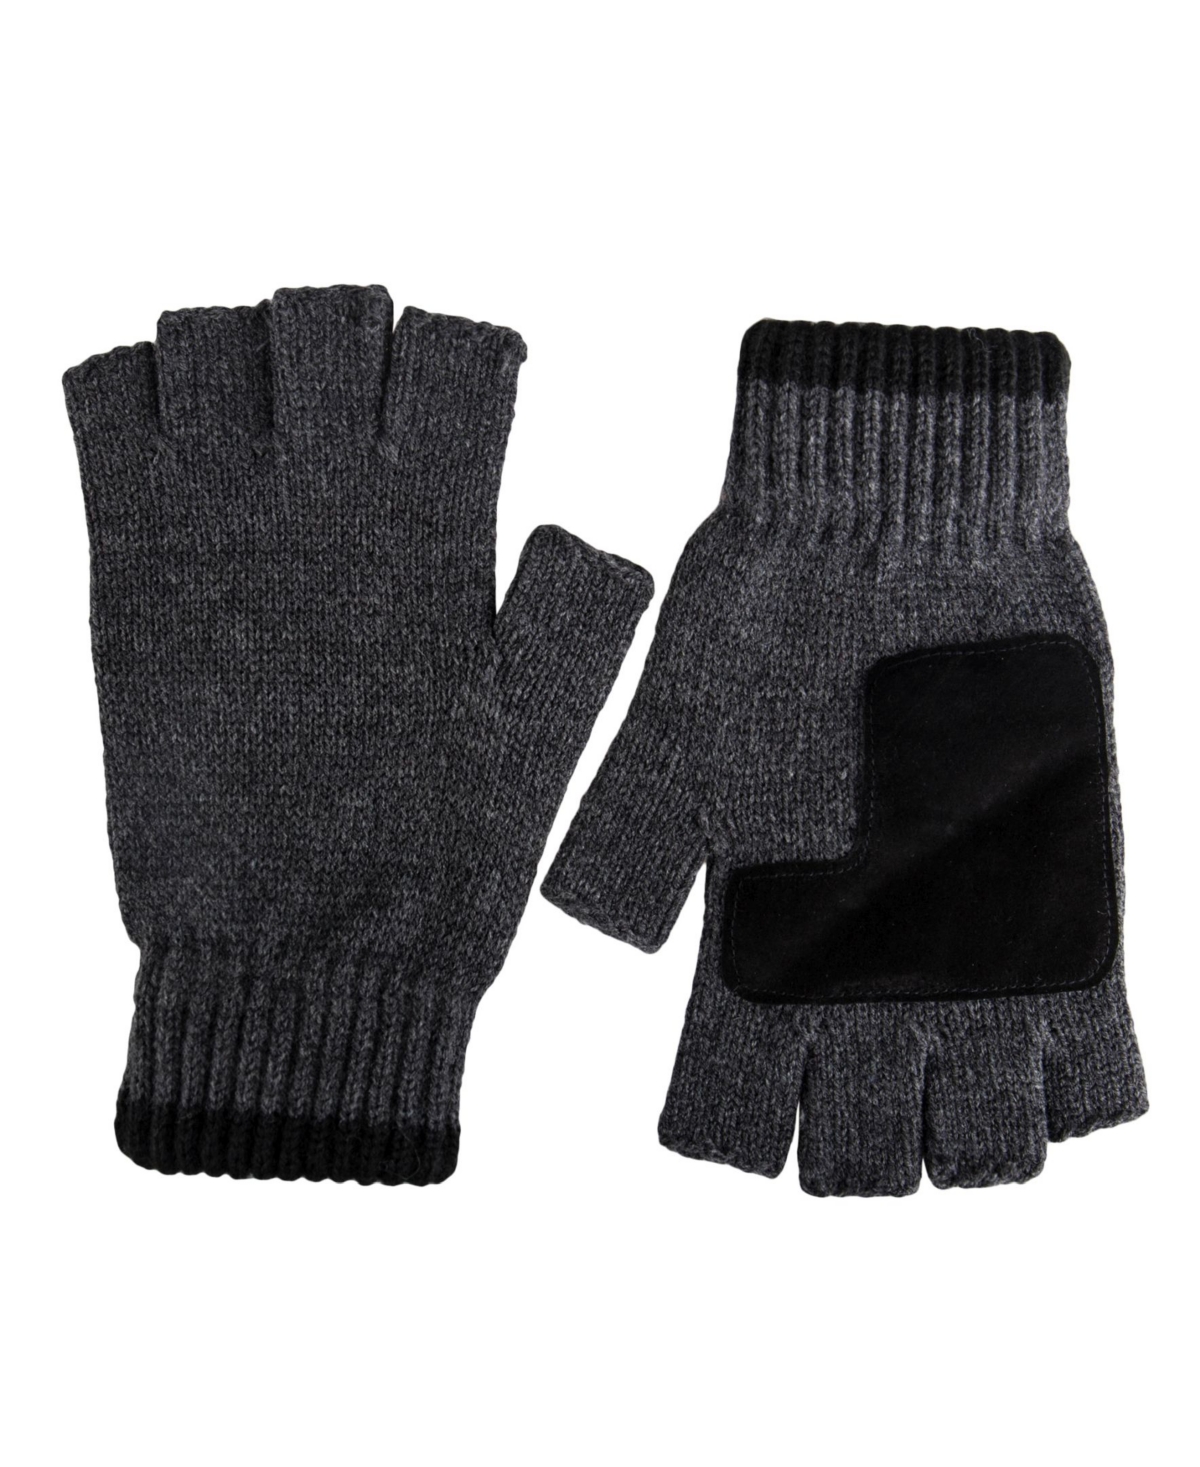 Men's Classic Fingerless Marled Knit Gloves - Dark Gray